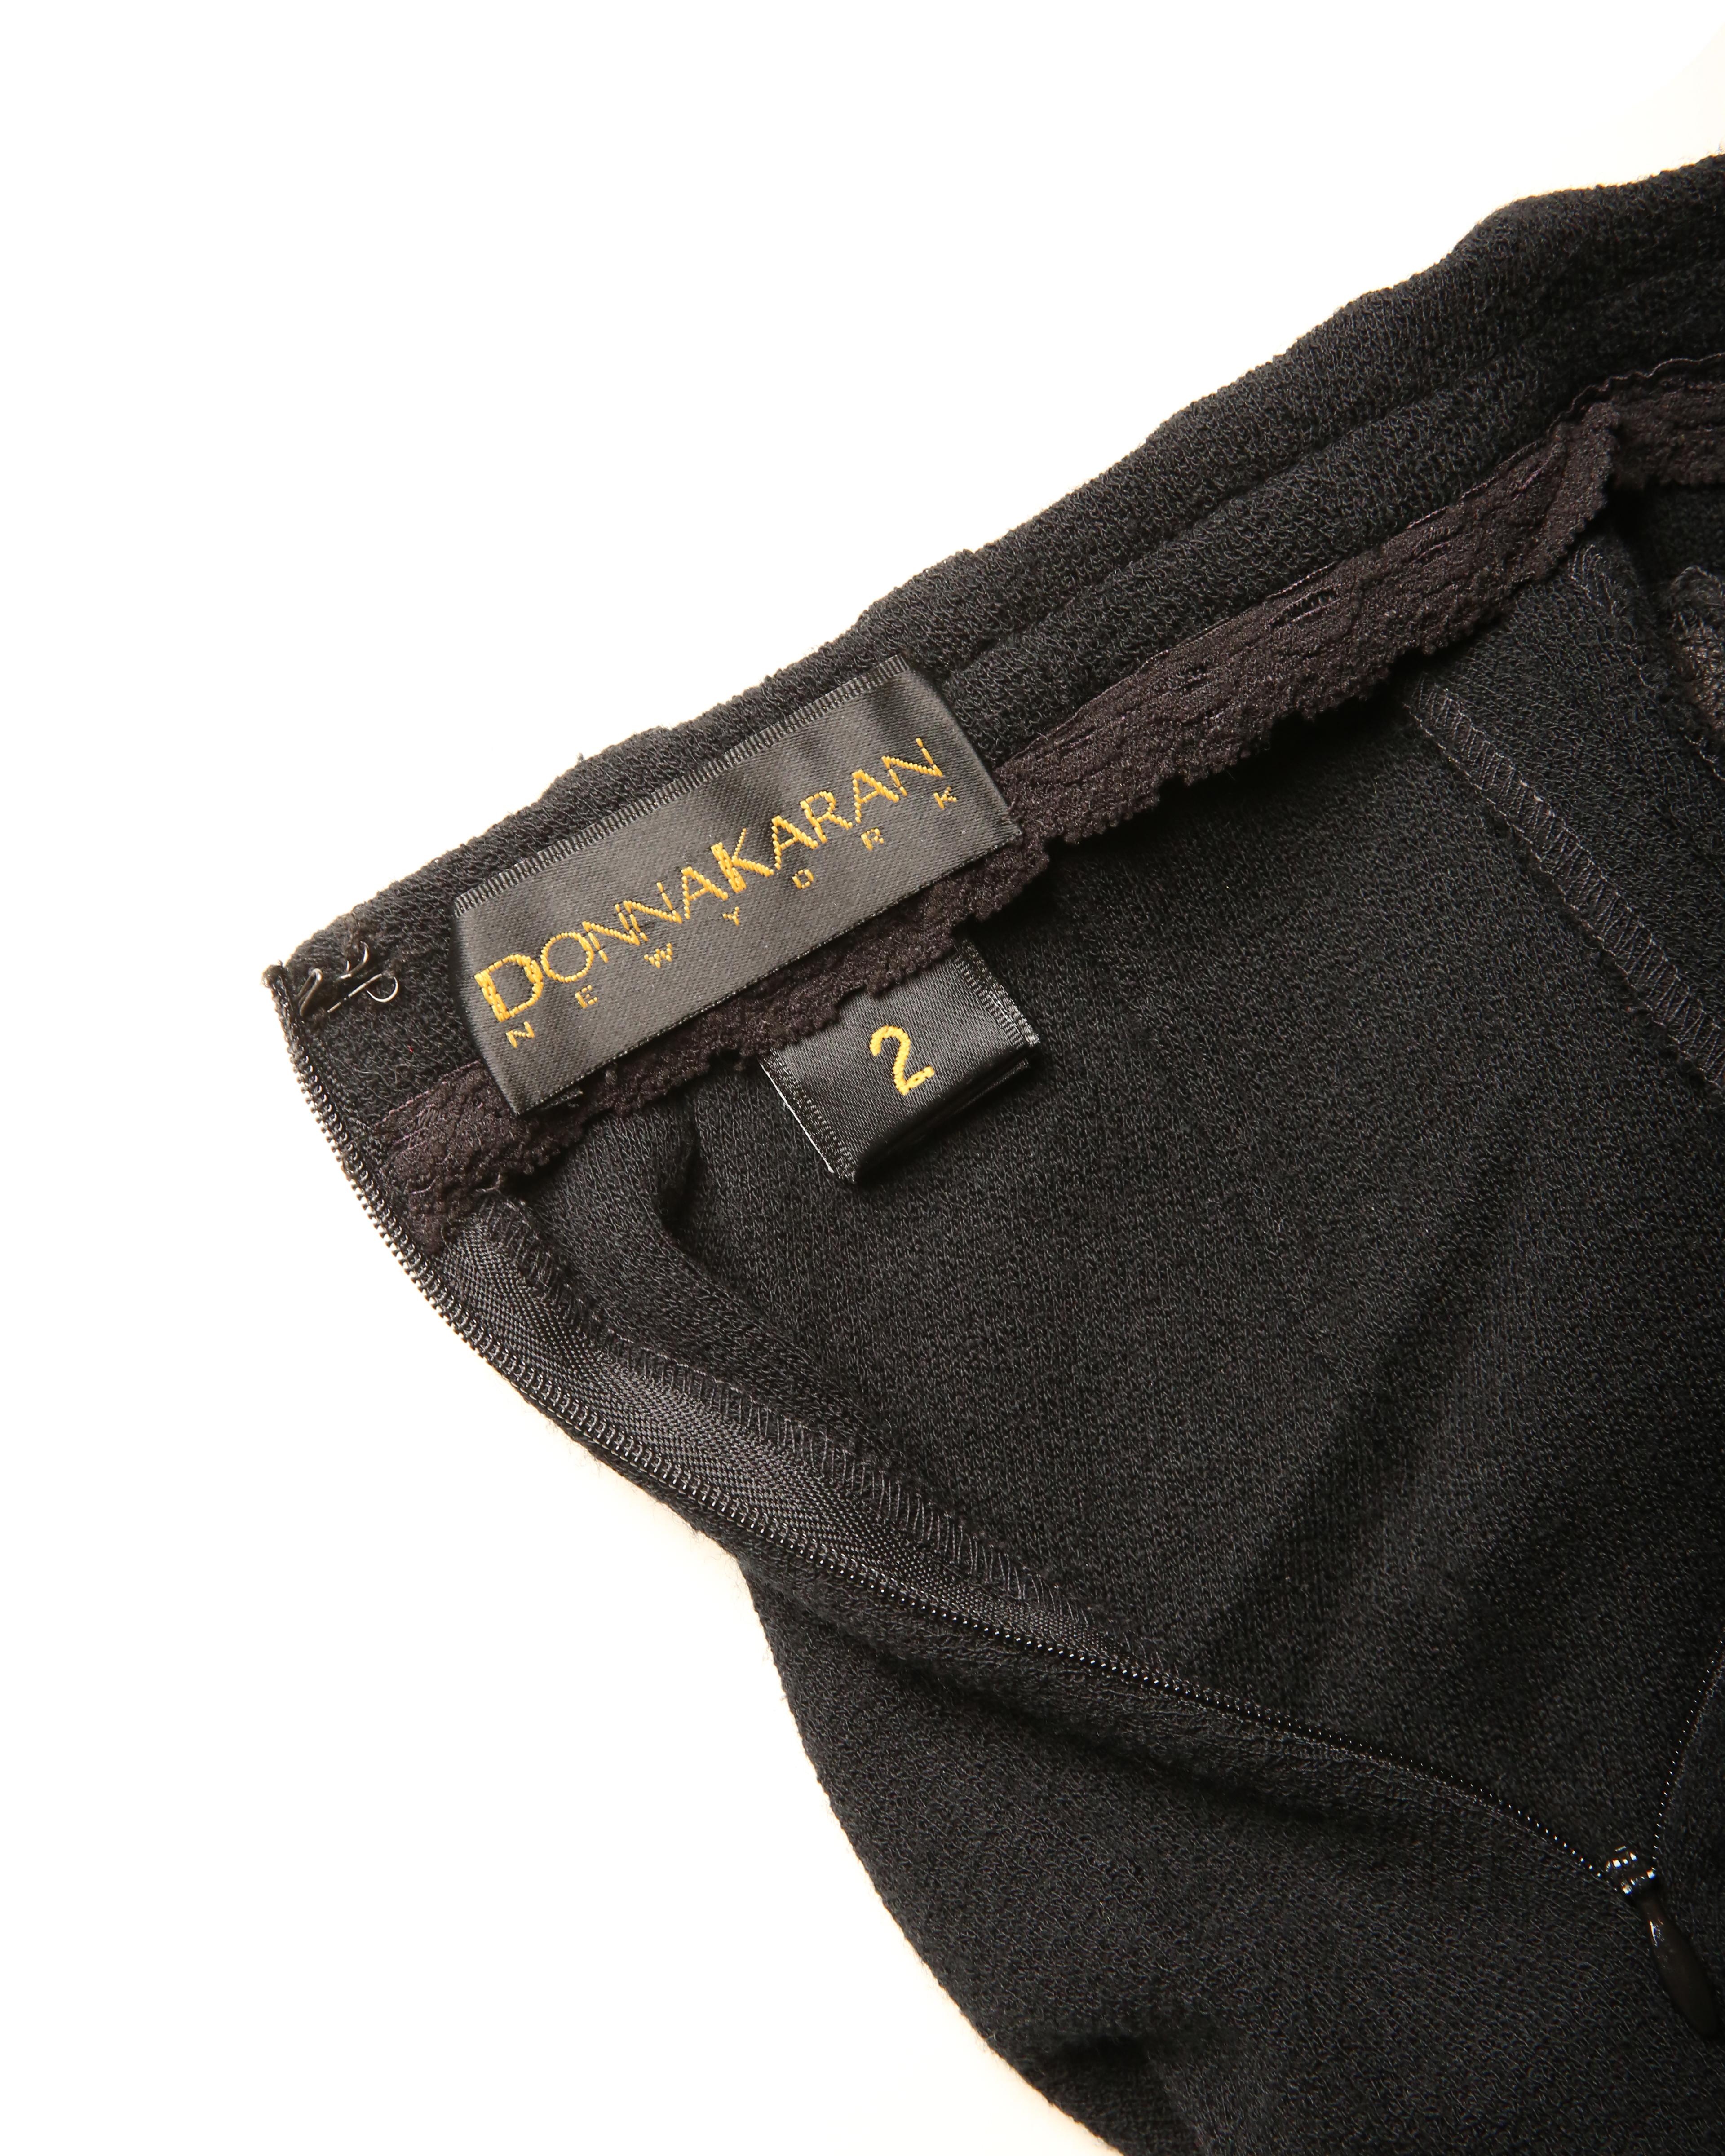 Donna Karan vtg navy blue black gold button zip wool leather high waisted skirt 6